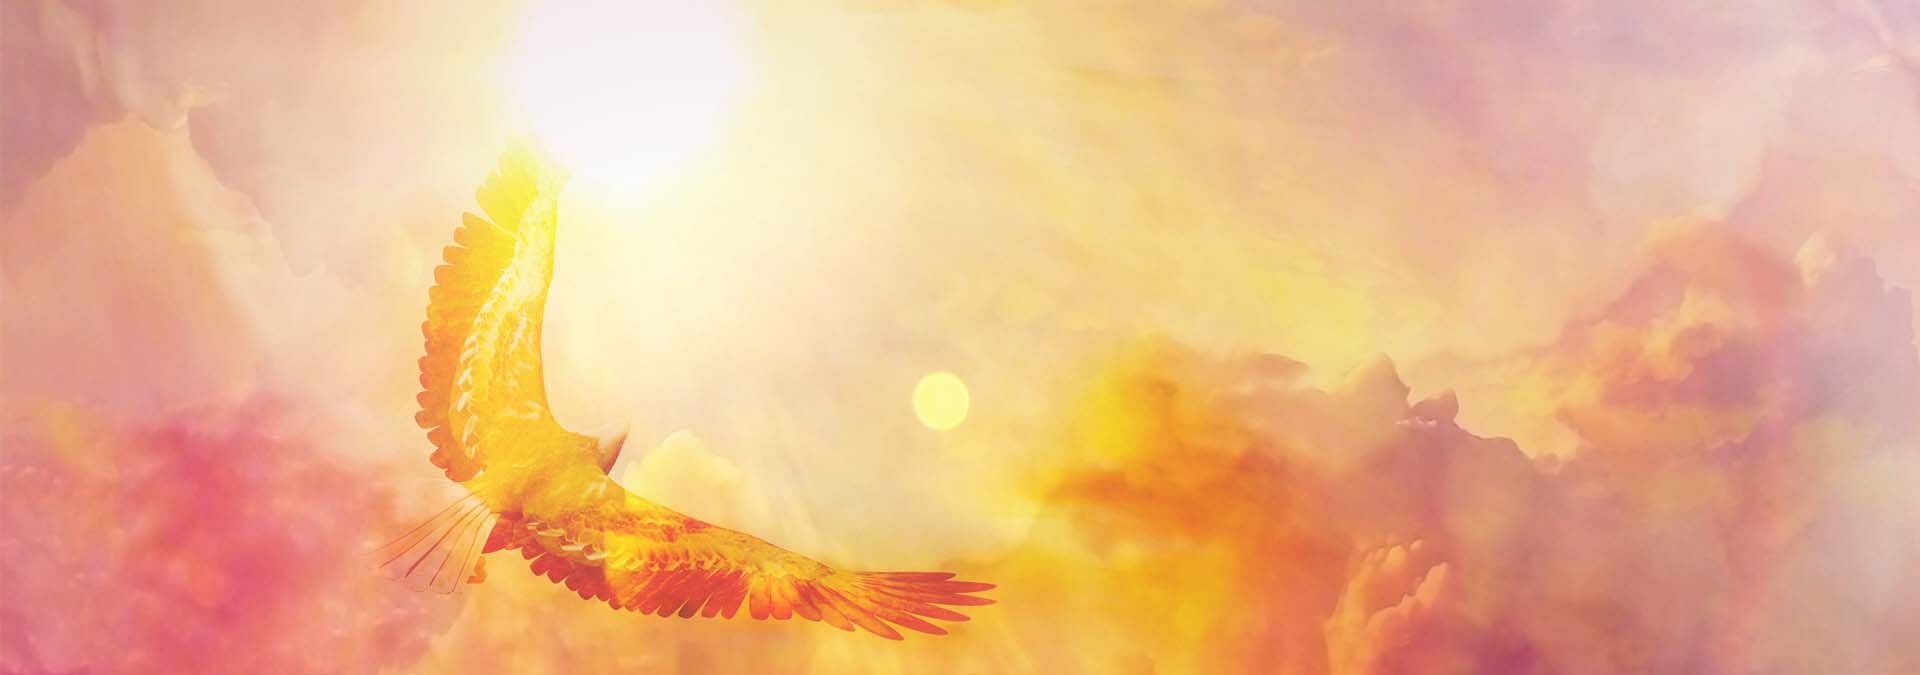 Adler mit ausgebreiteten Schwingen der vor einem Hintergrund aus Sonne und rot-orange-gelb-rosa Wolken schwebt